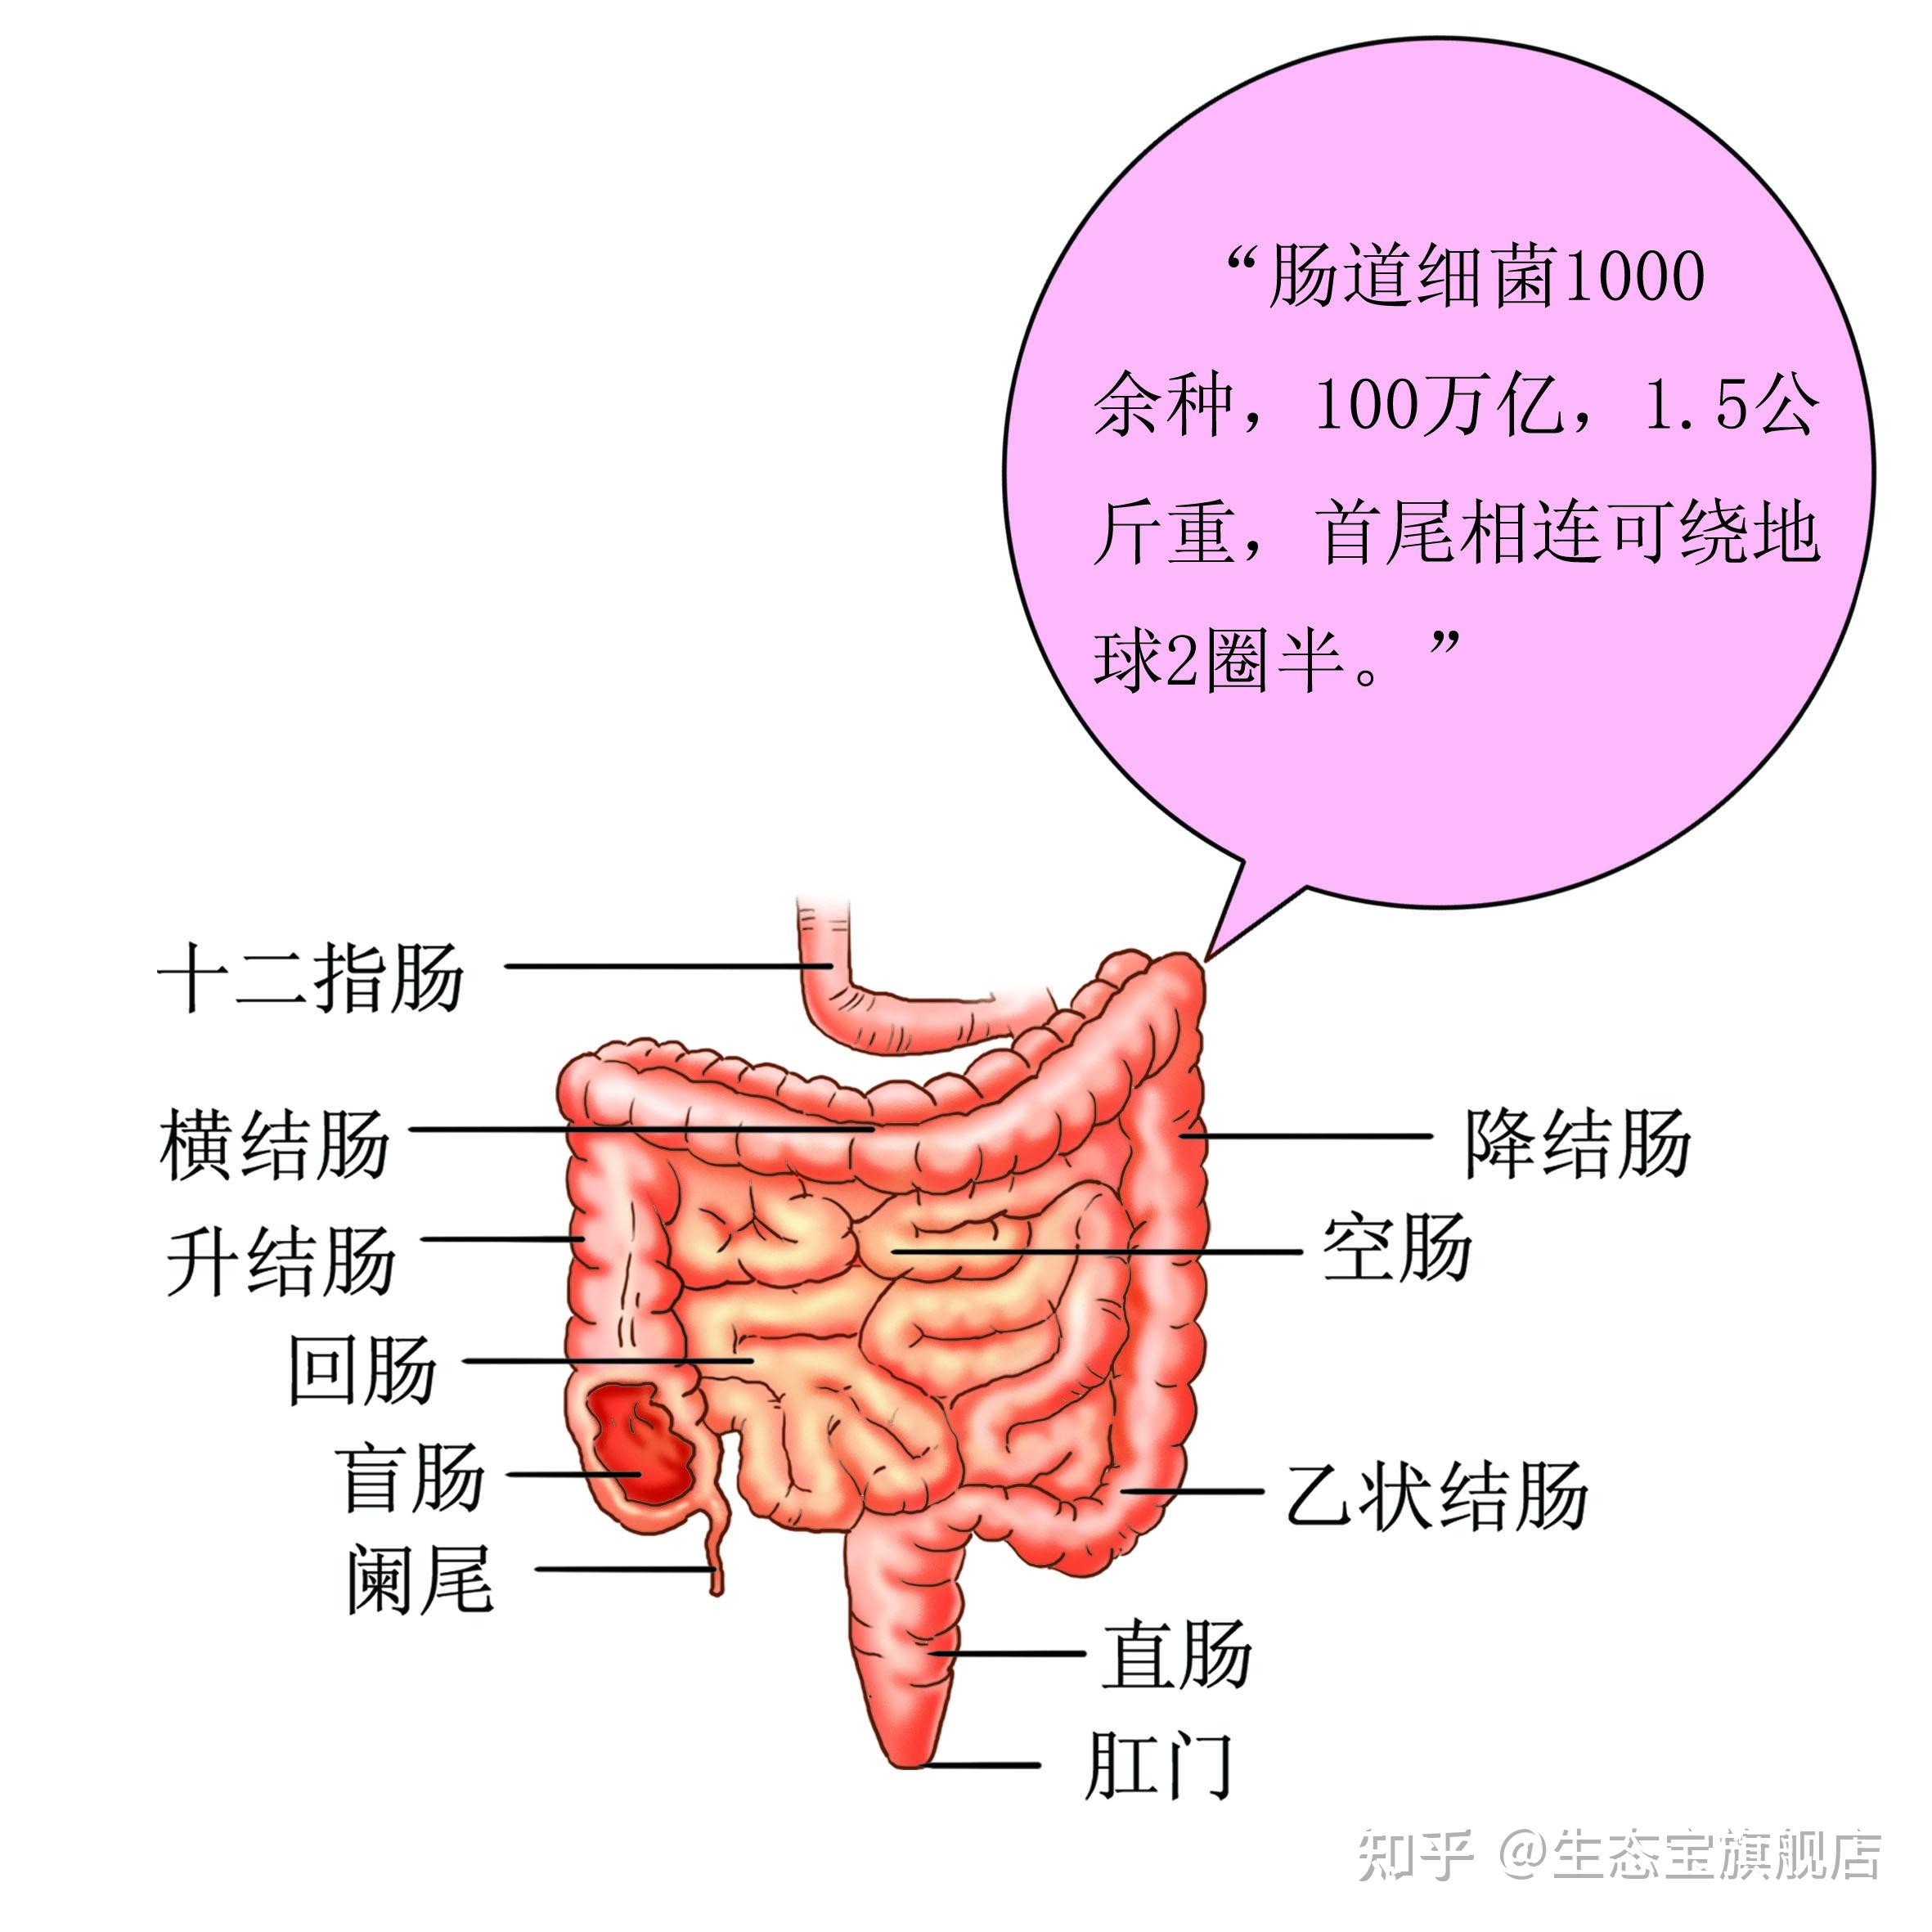 263.小肠的动脉※-动态人体解剖-医学